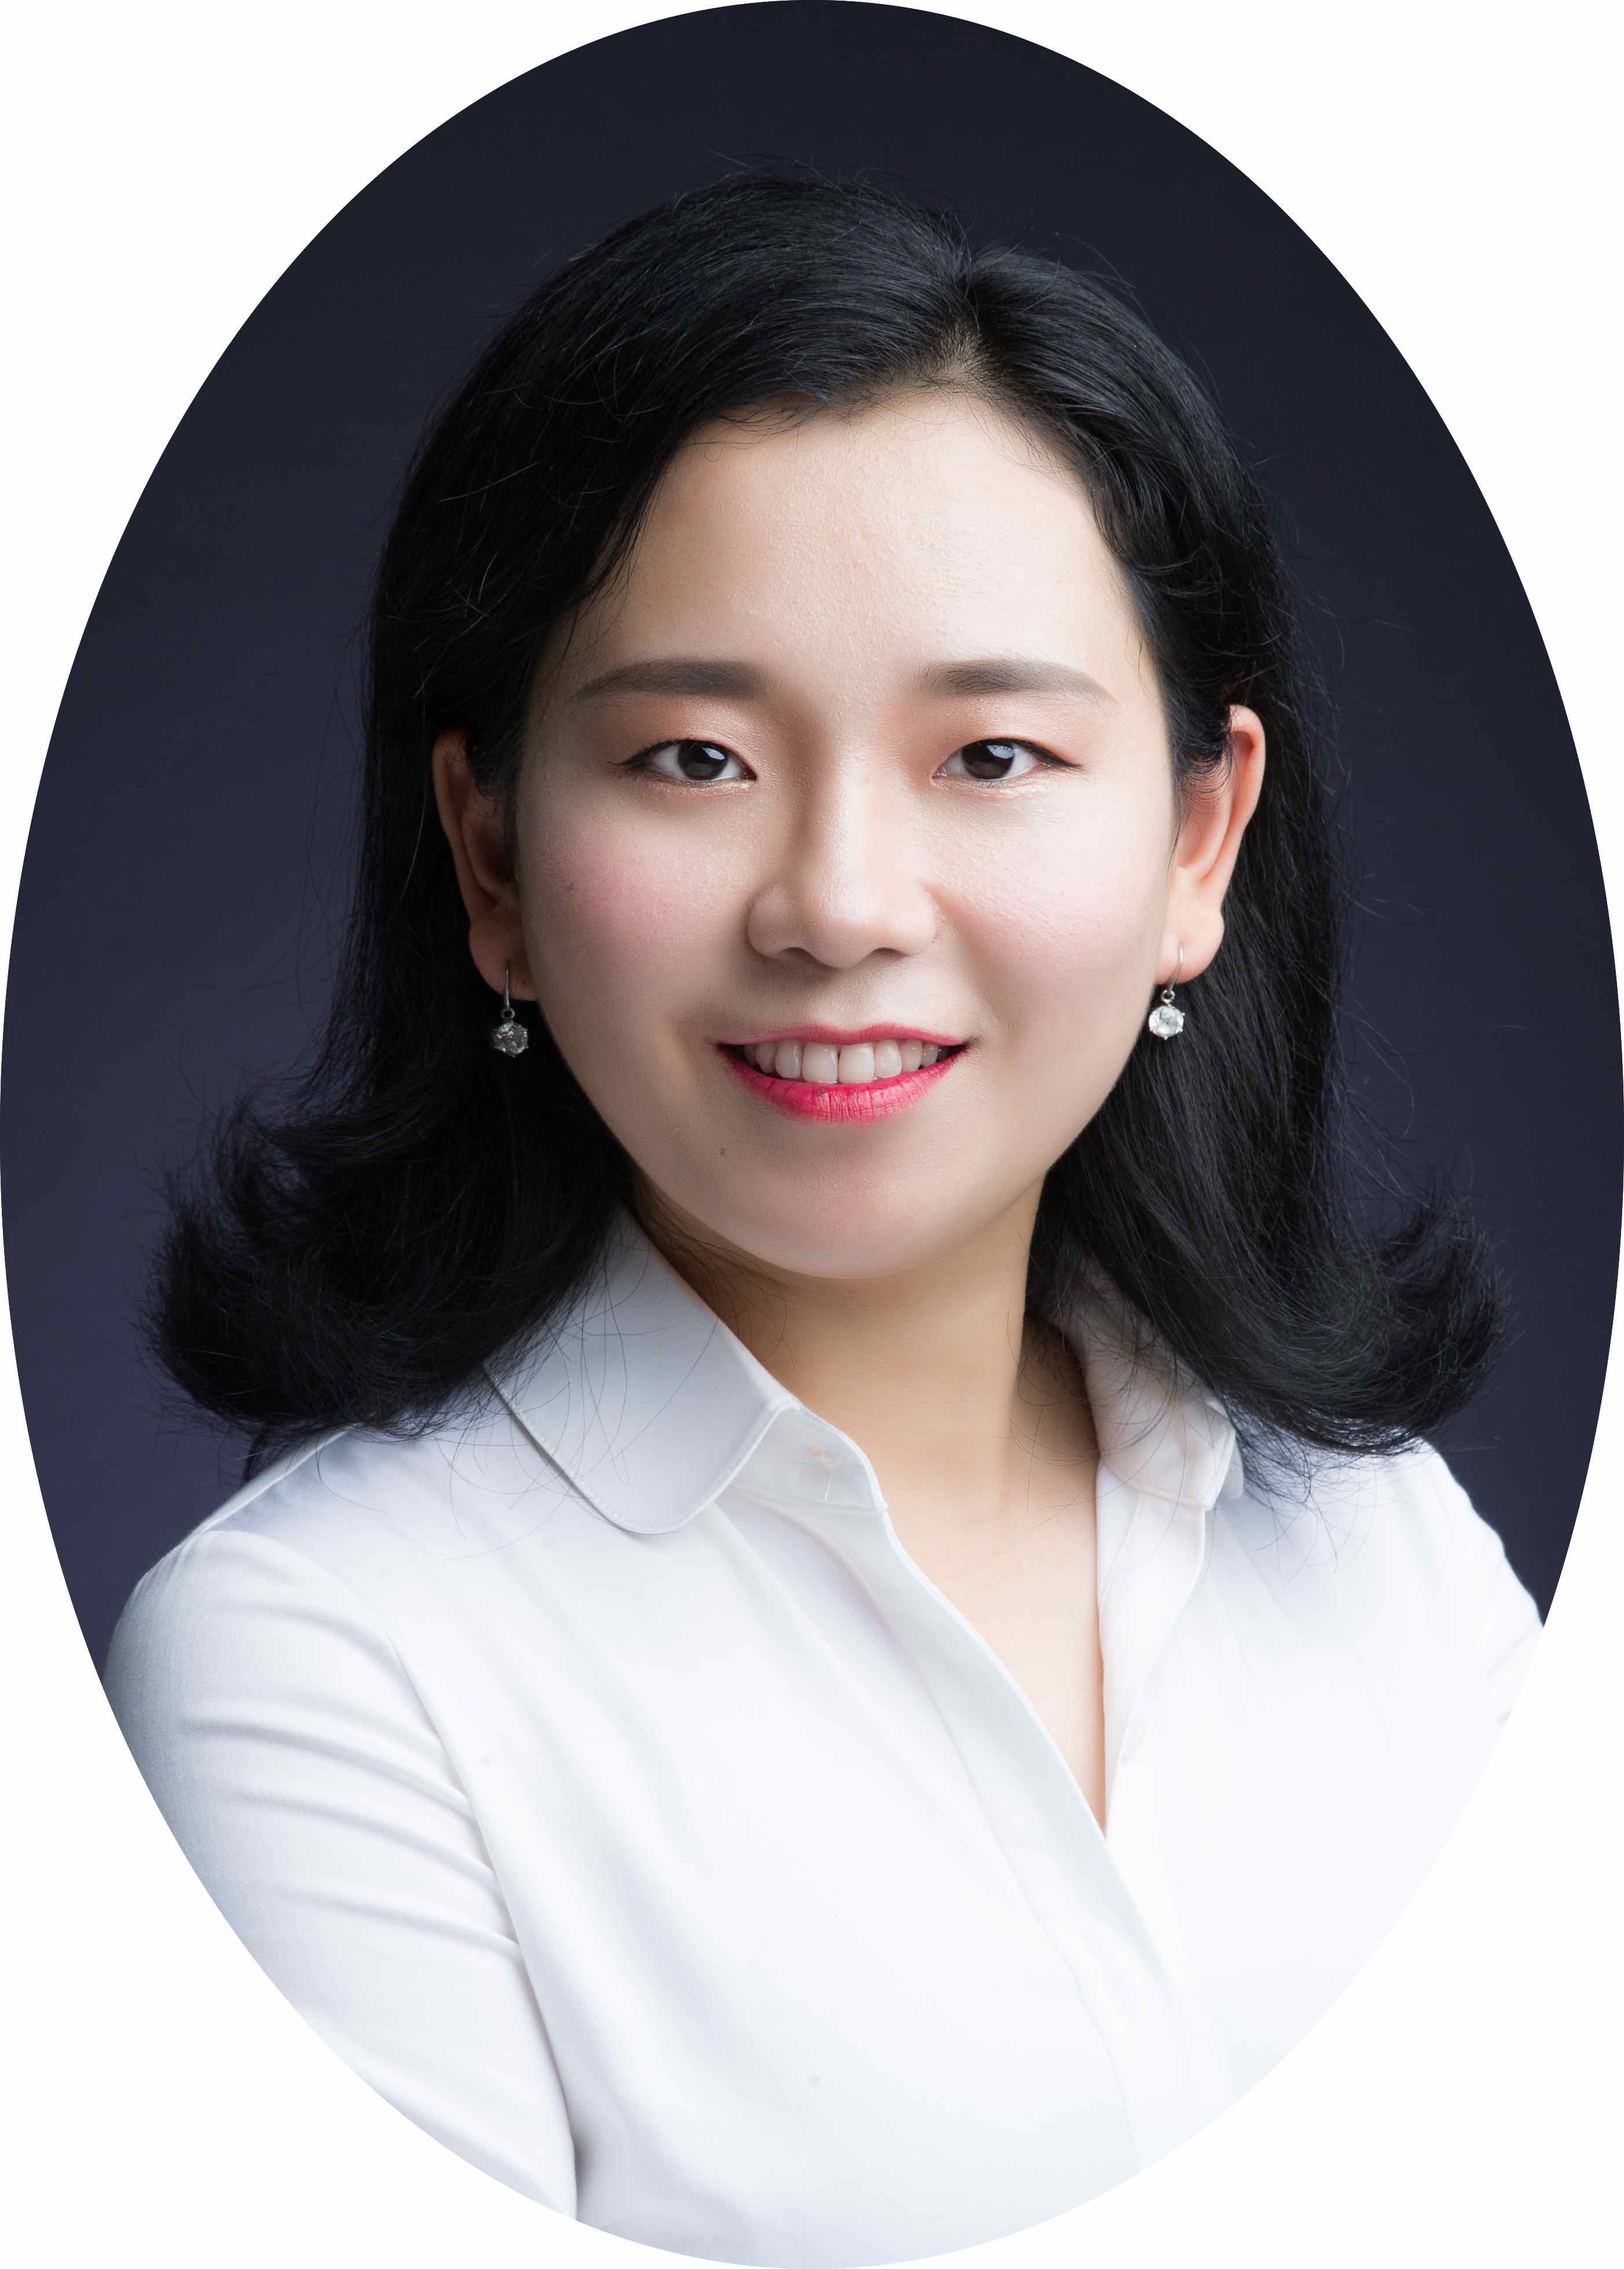 Zheng Chen